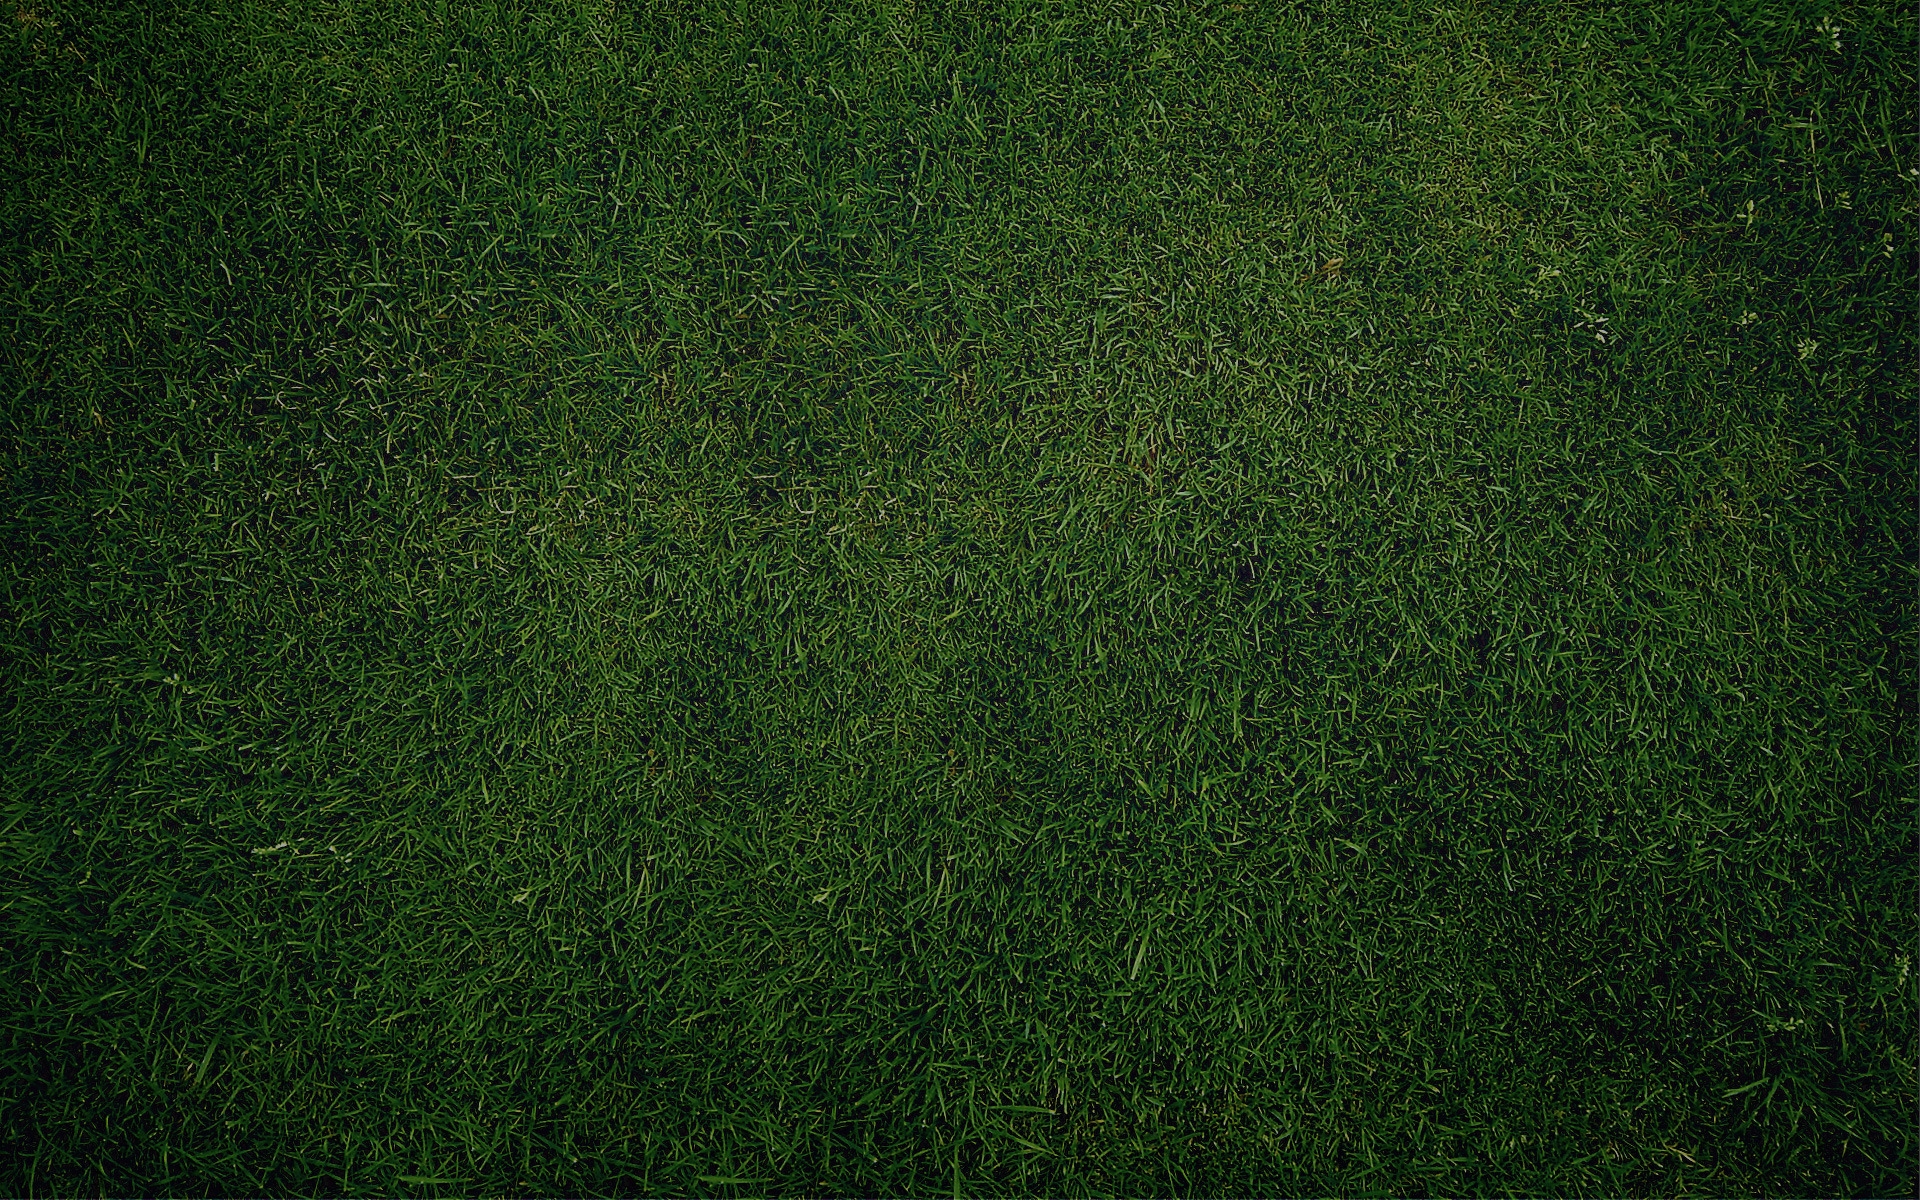 Green Grass for 1920 x 1200 widescreen resolution